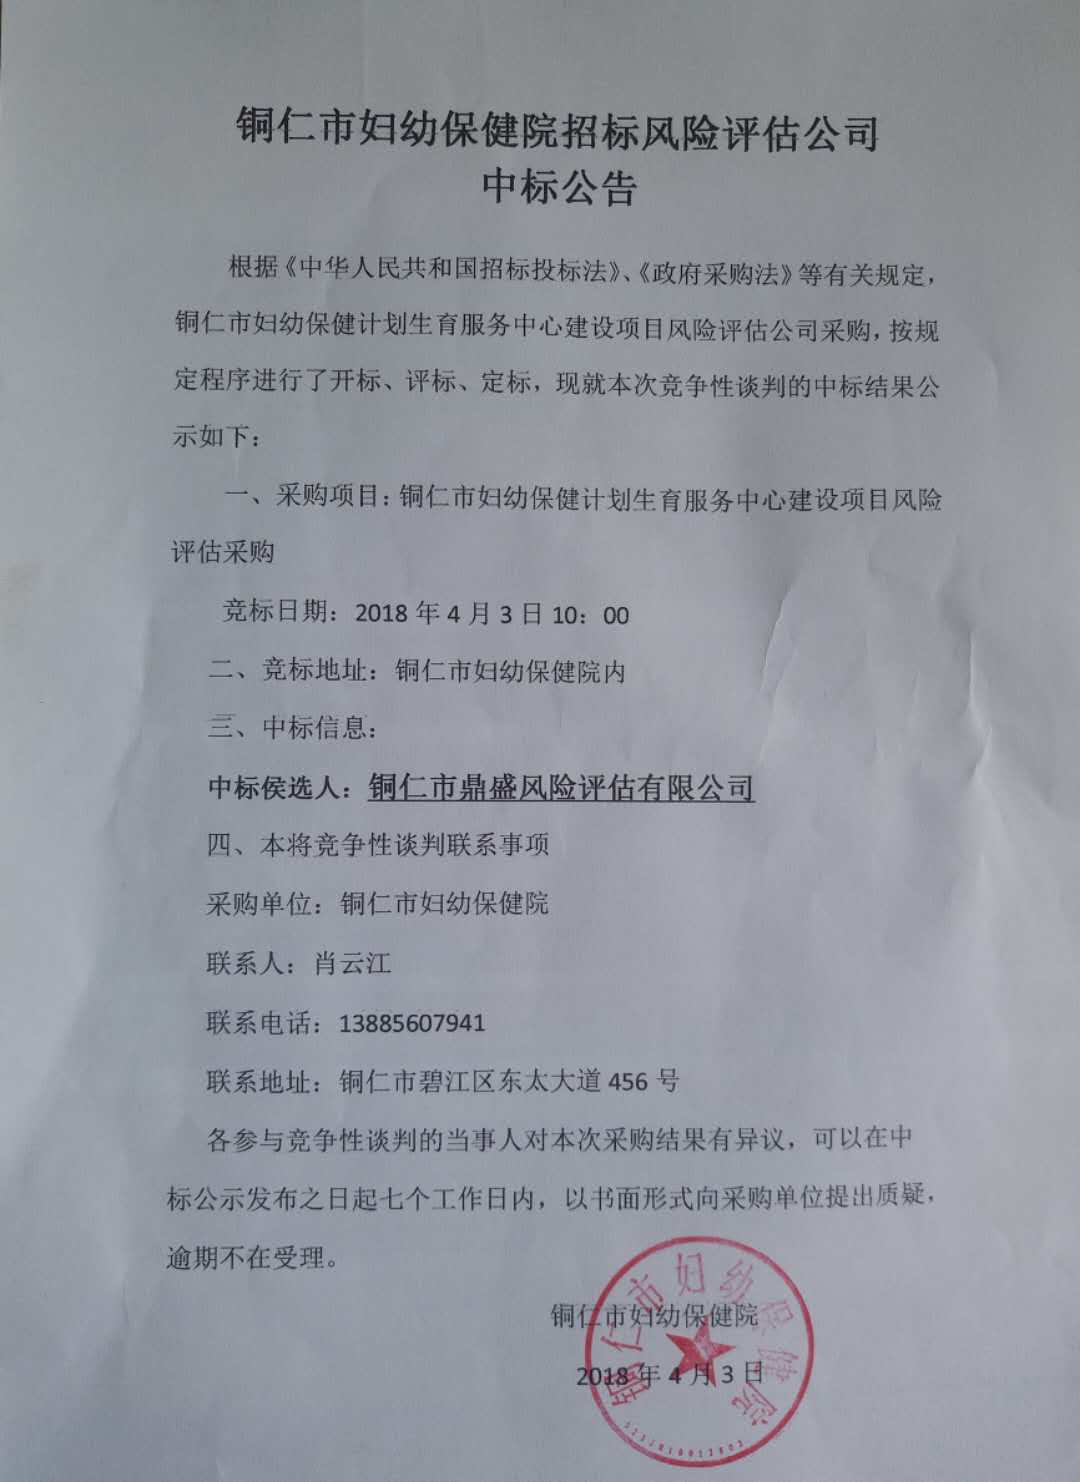 铜仁市妇幼保健院招标风险评估公司中标公告